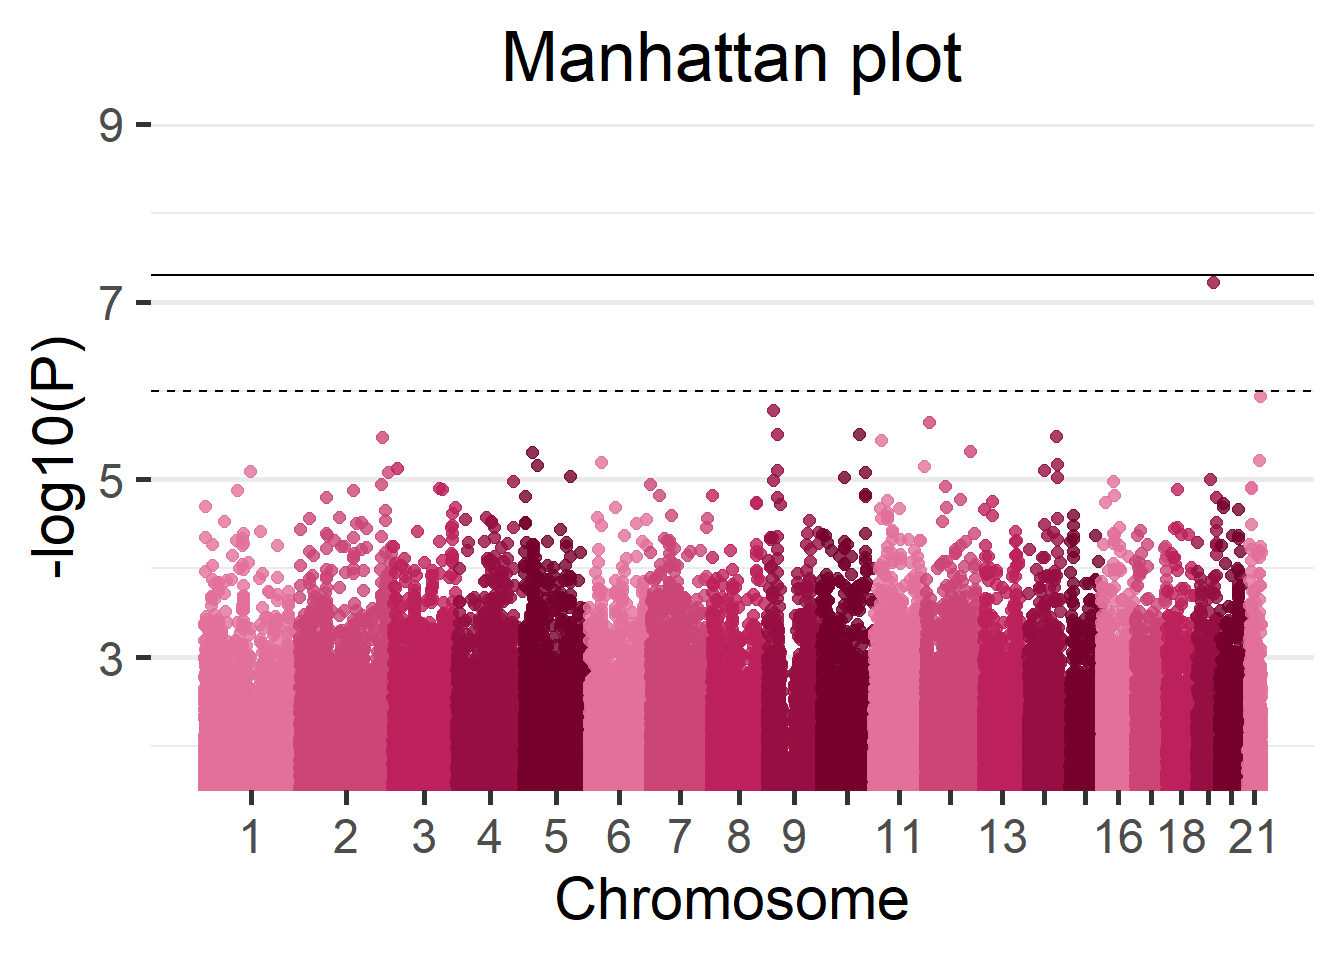 Manhattan plot of the Cohort 1.